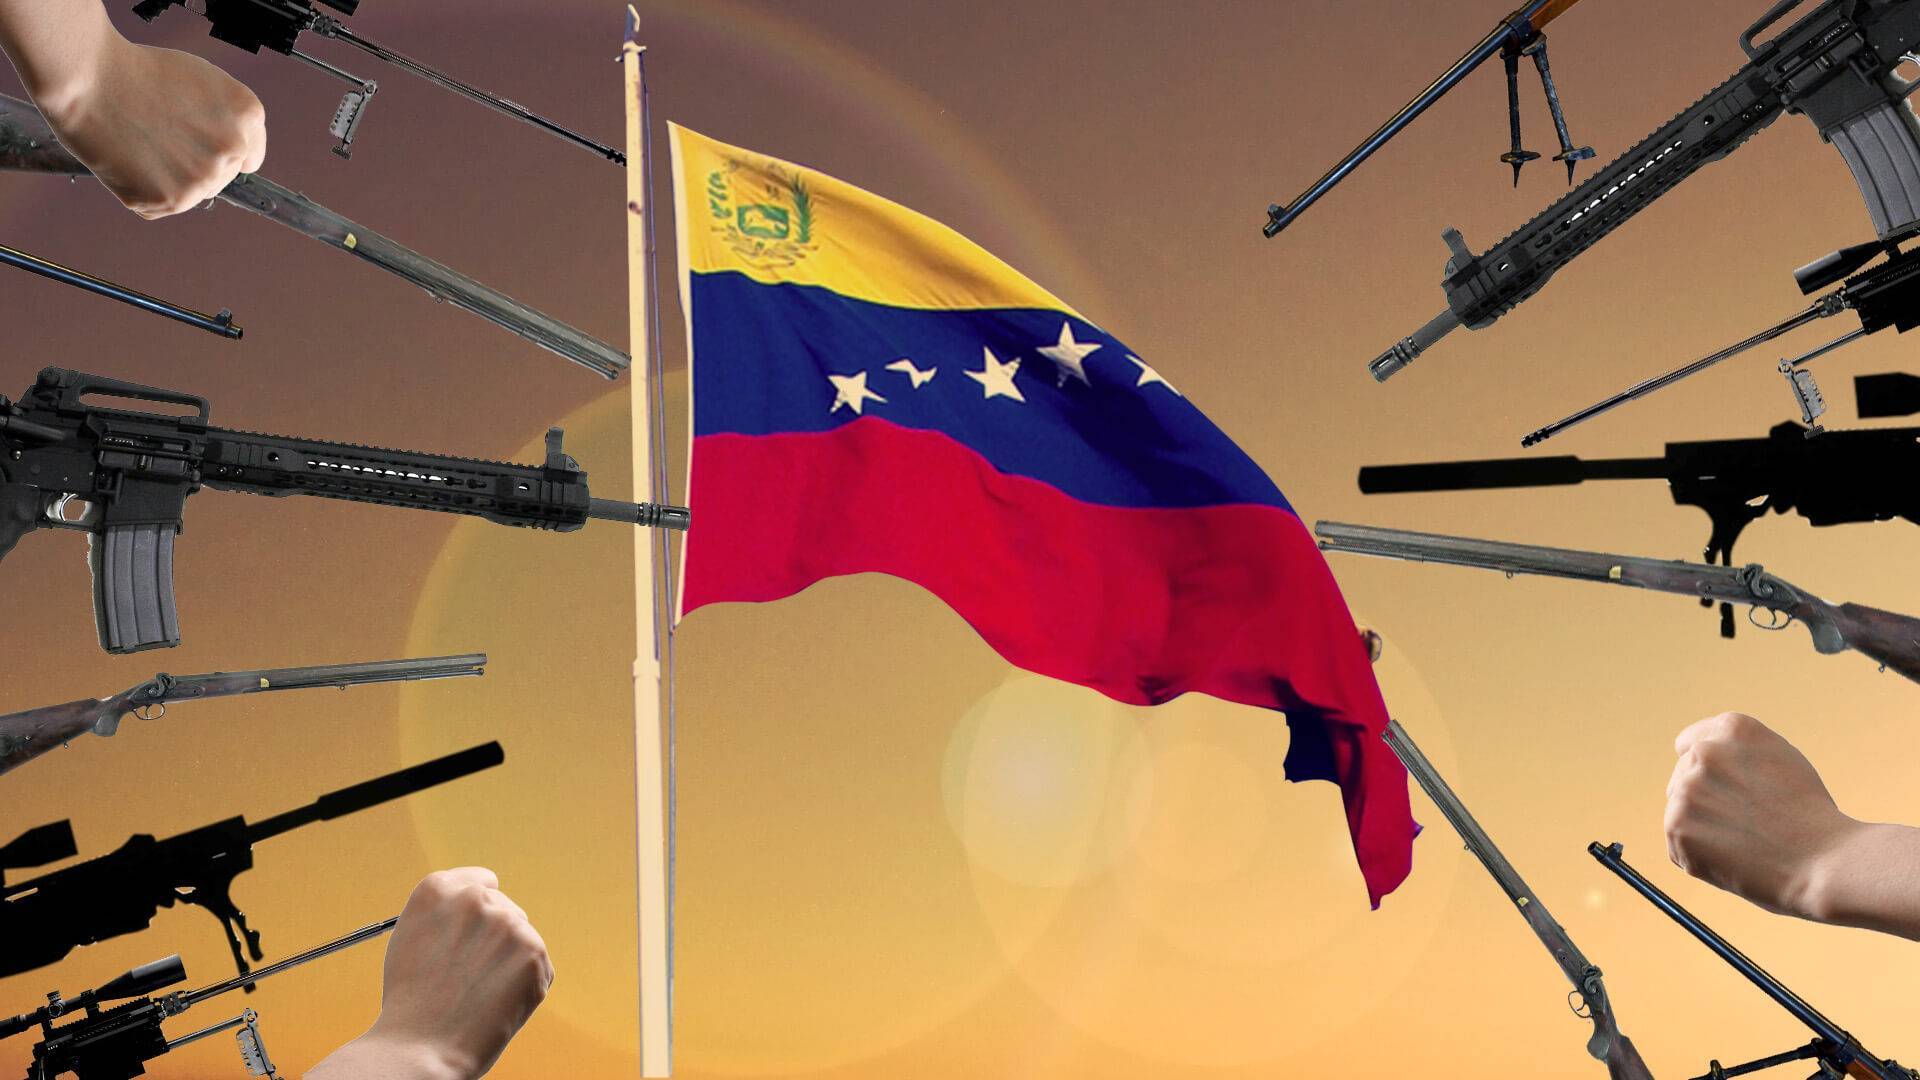 Febrero 2019: cuando Piñera fue a invadir Venezuela HispanTV, Irán